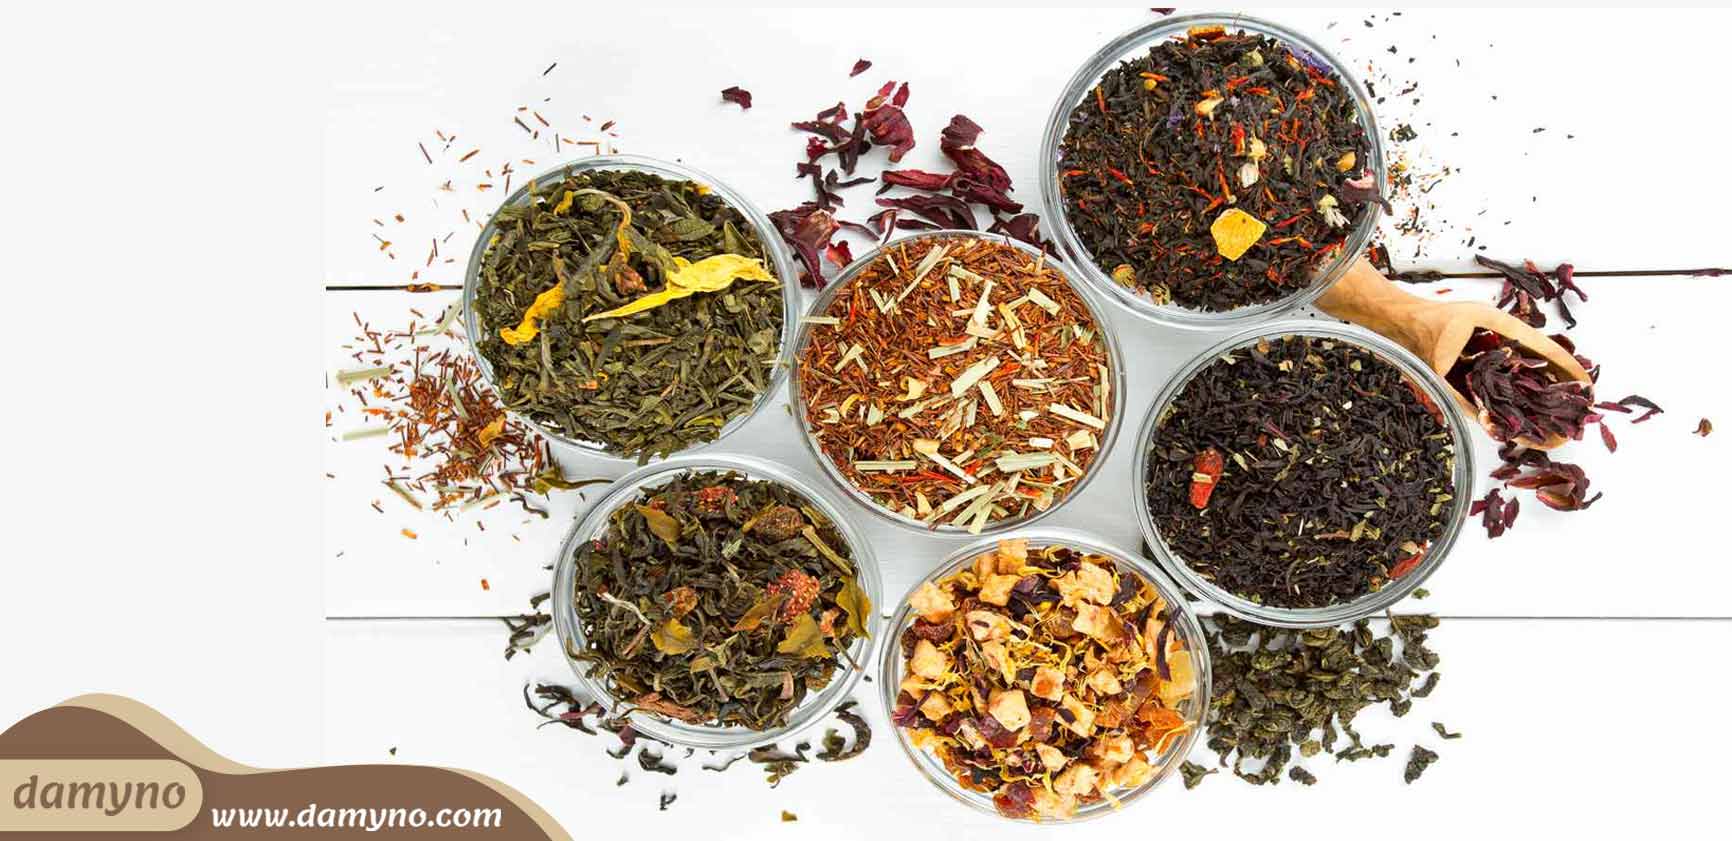 دمی نو فروشگاه تخصصی دمنوش های گیاهی و لوازم چای و دمنوش